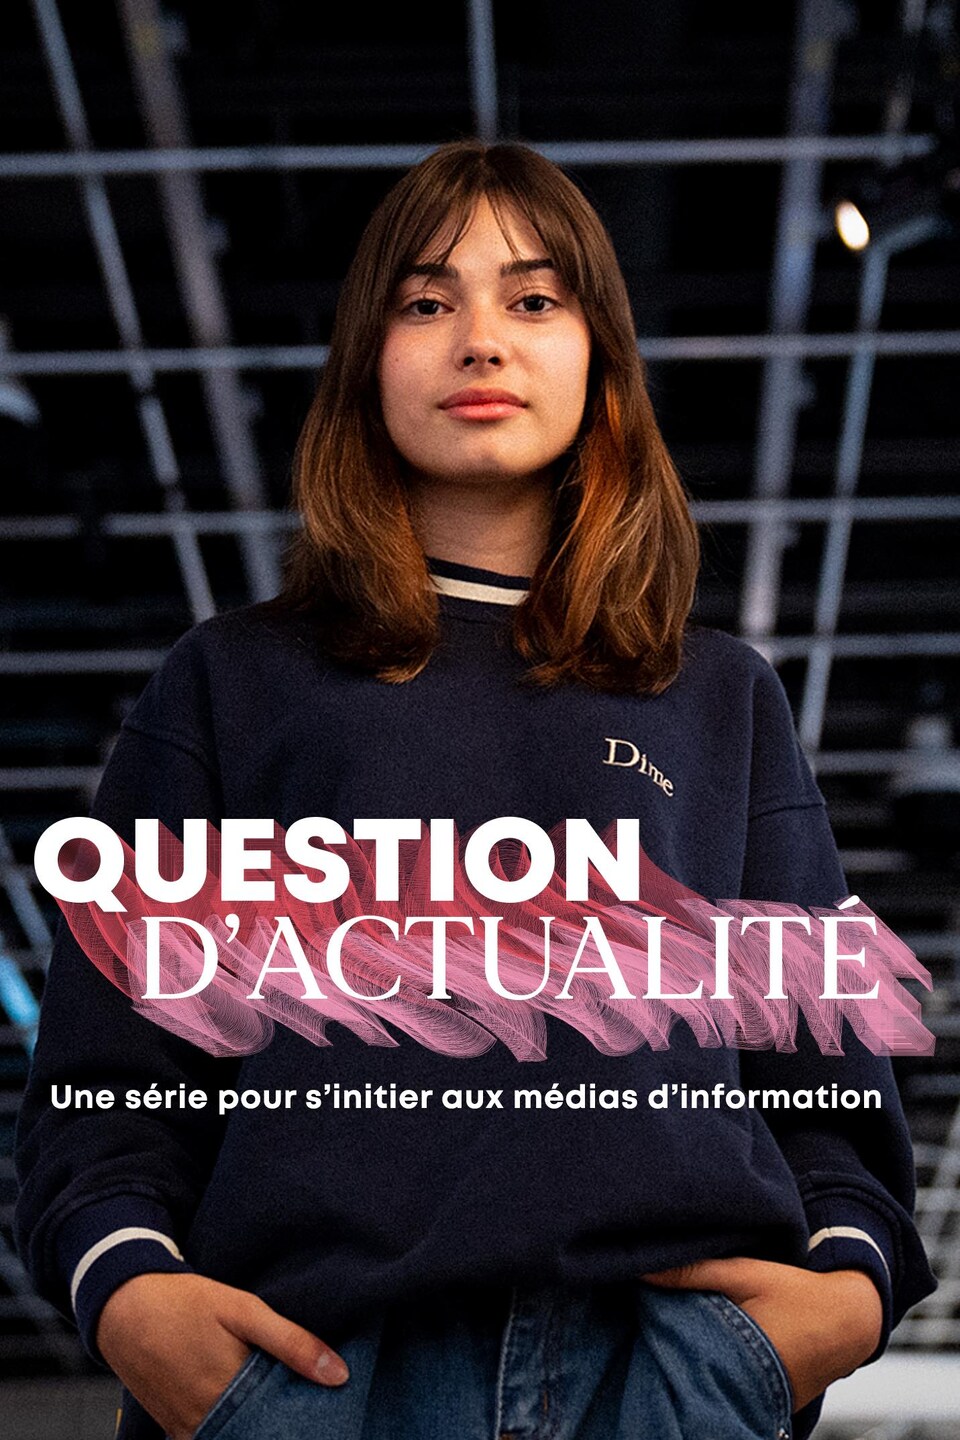 Estelle Fournier a les mains dans les poches. On voit le logo de Question d'actualité - Une série pour s'initier aux médias d'information.